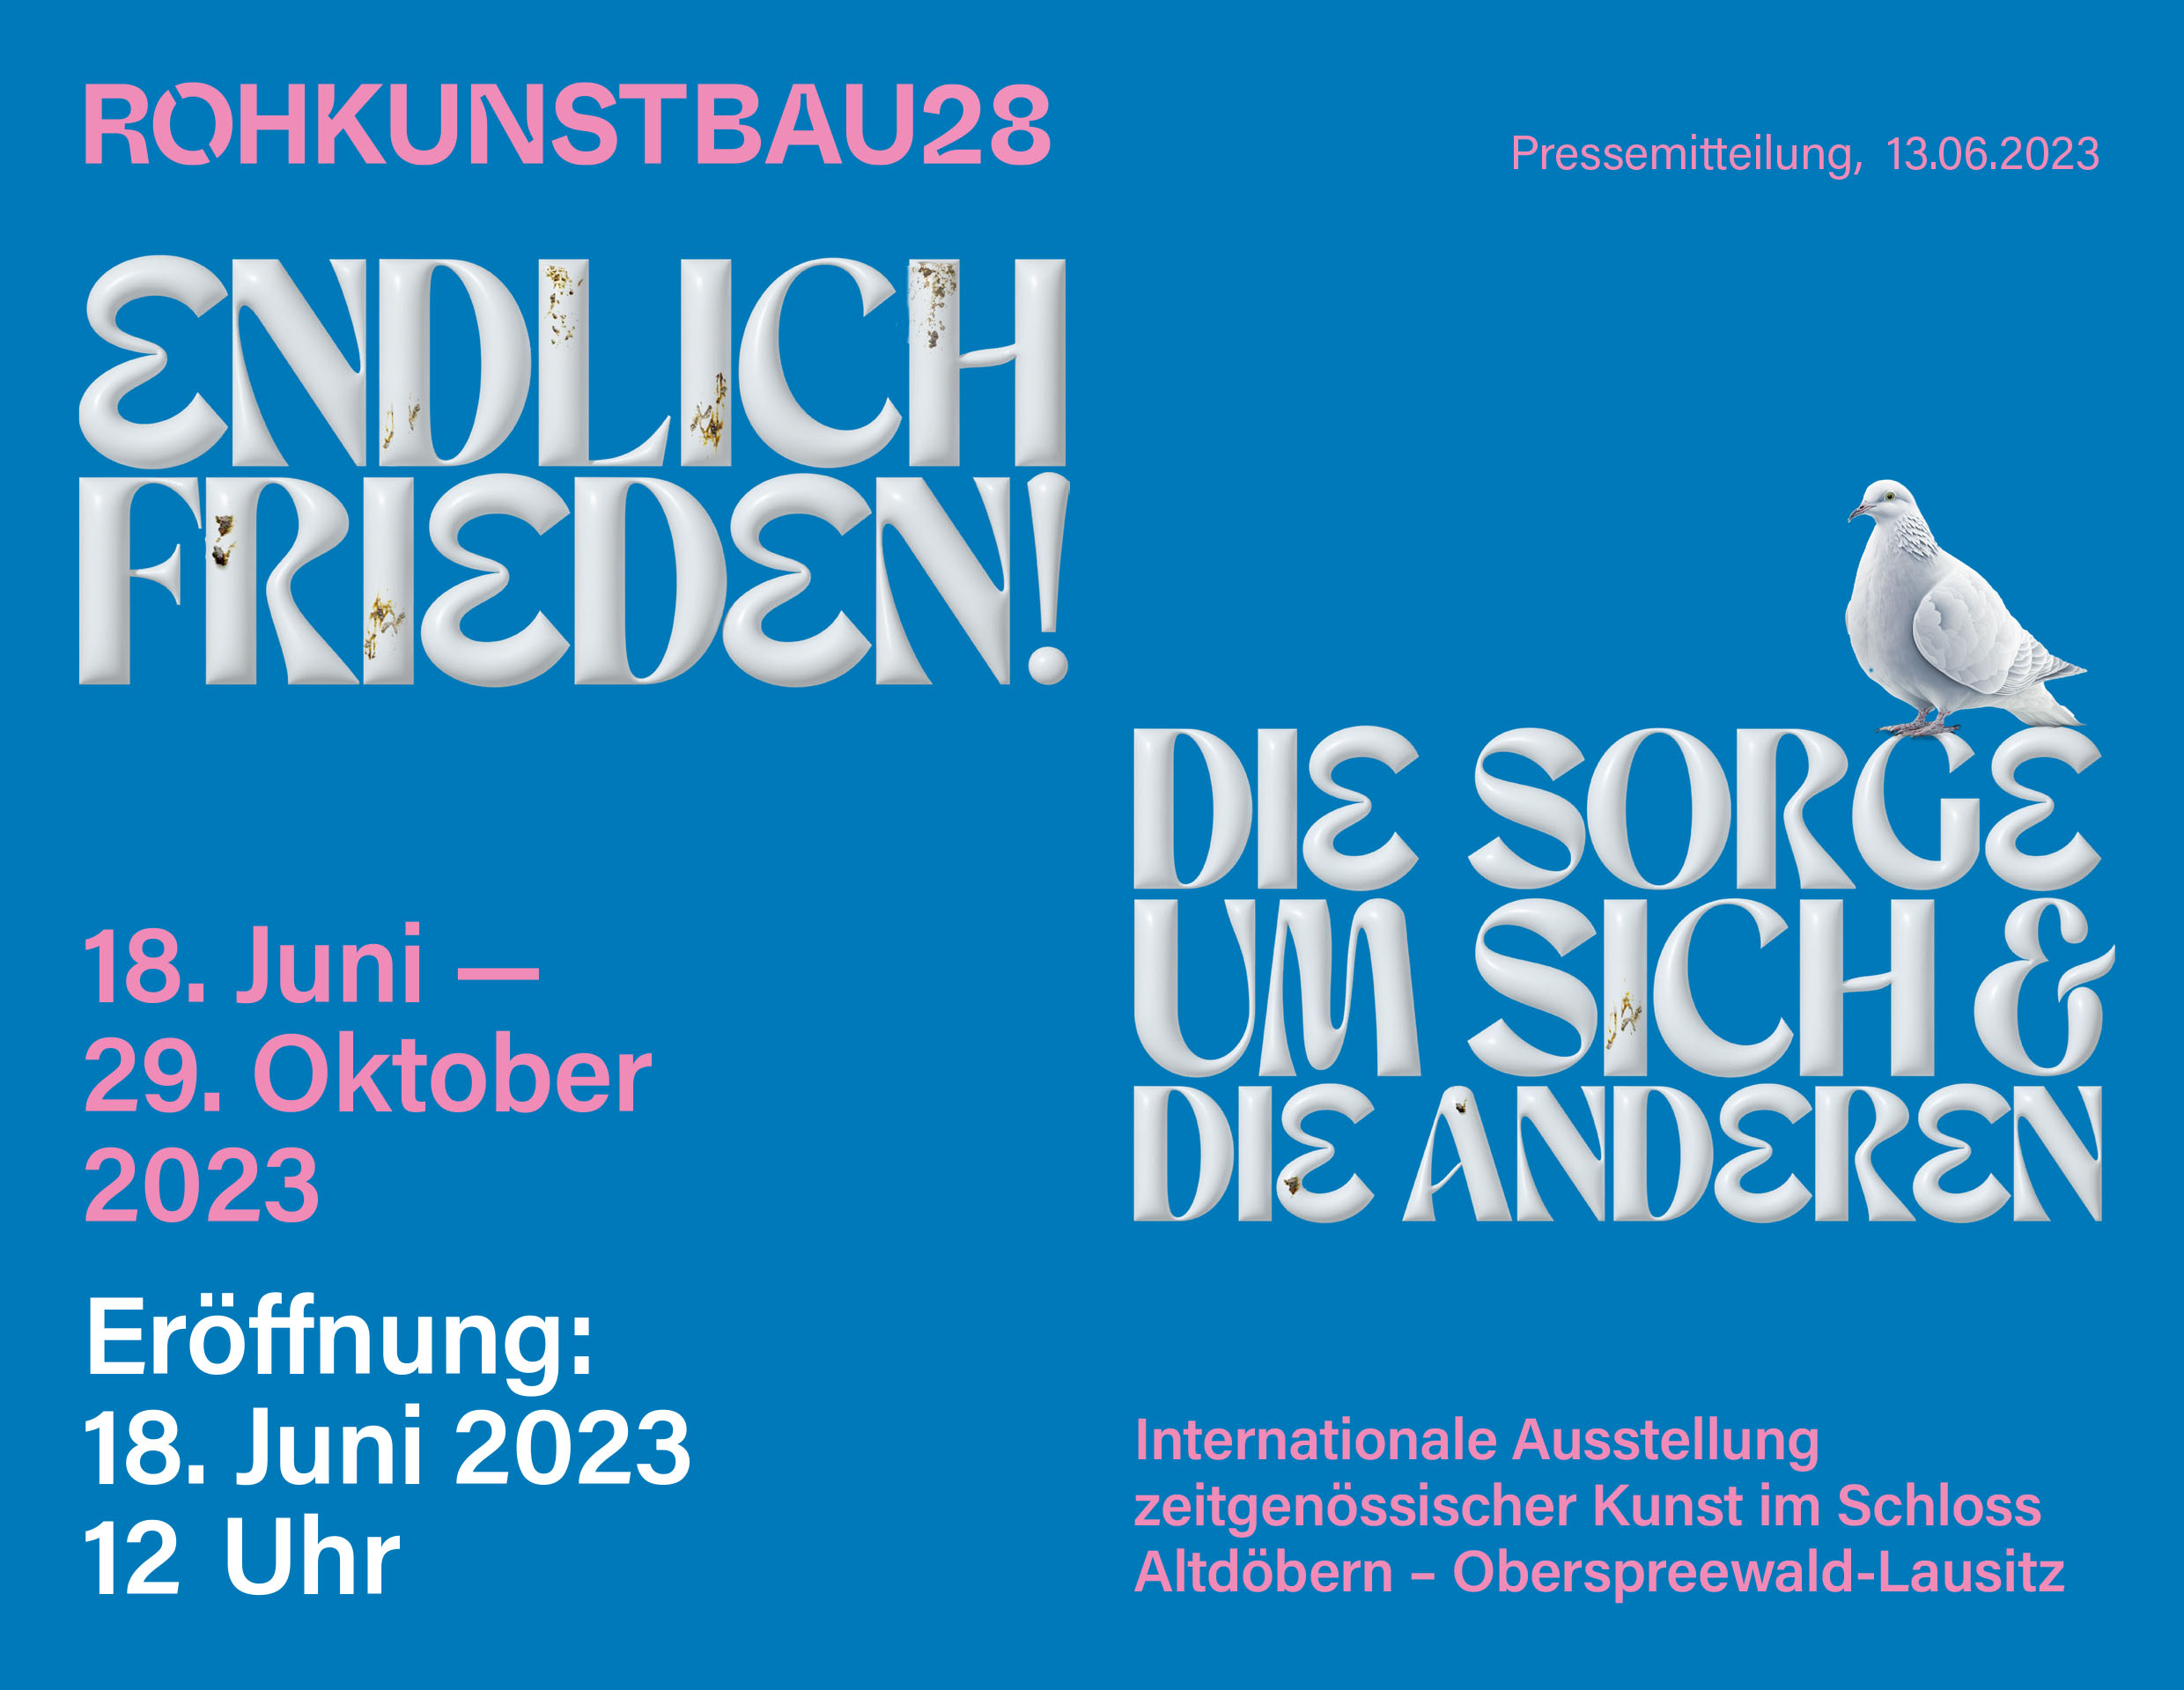 Endlich Frieden! | Group show with Mike Bourscheid